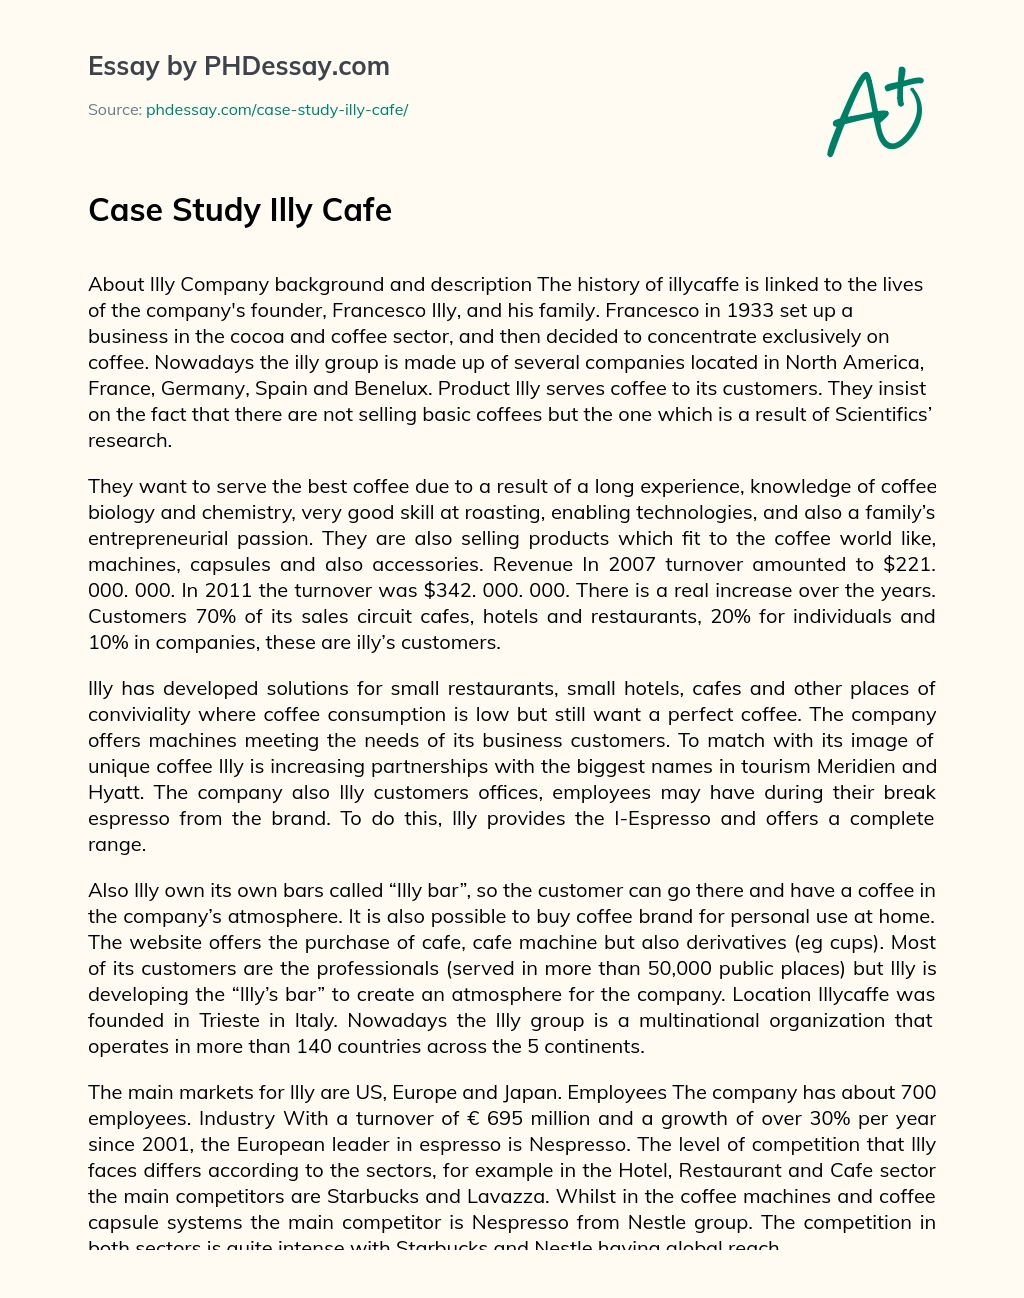 Case Study Illy Cafe essay